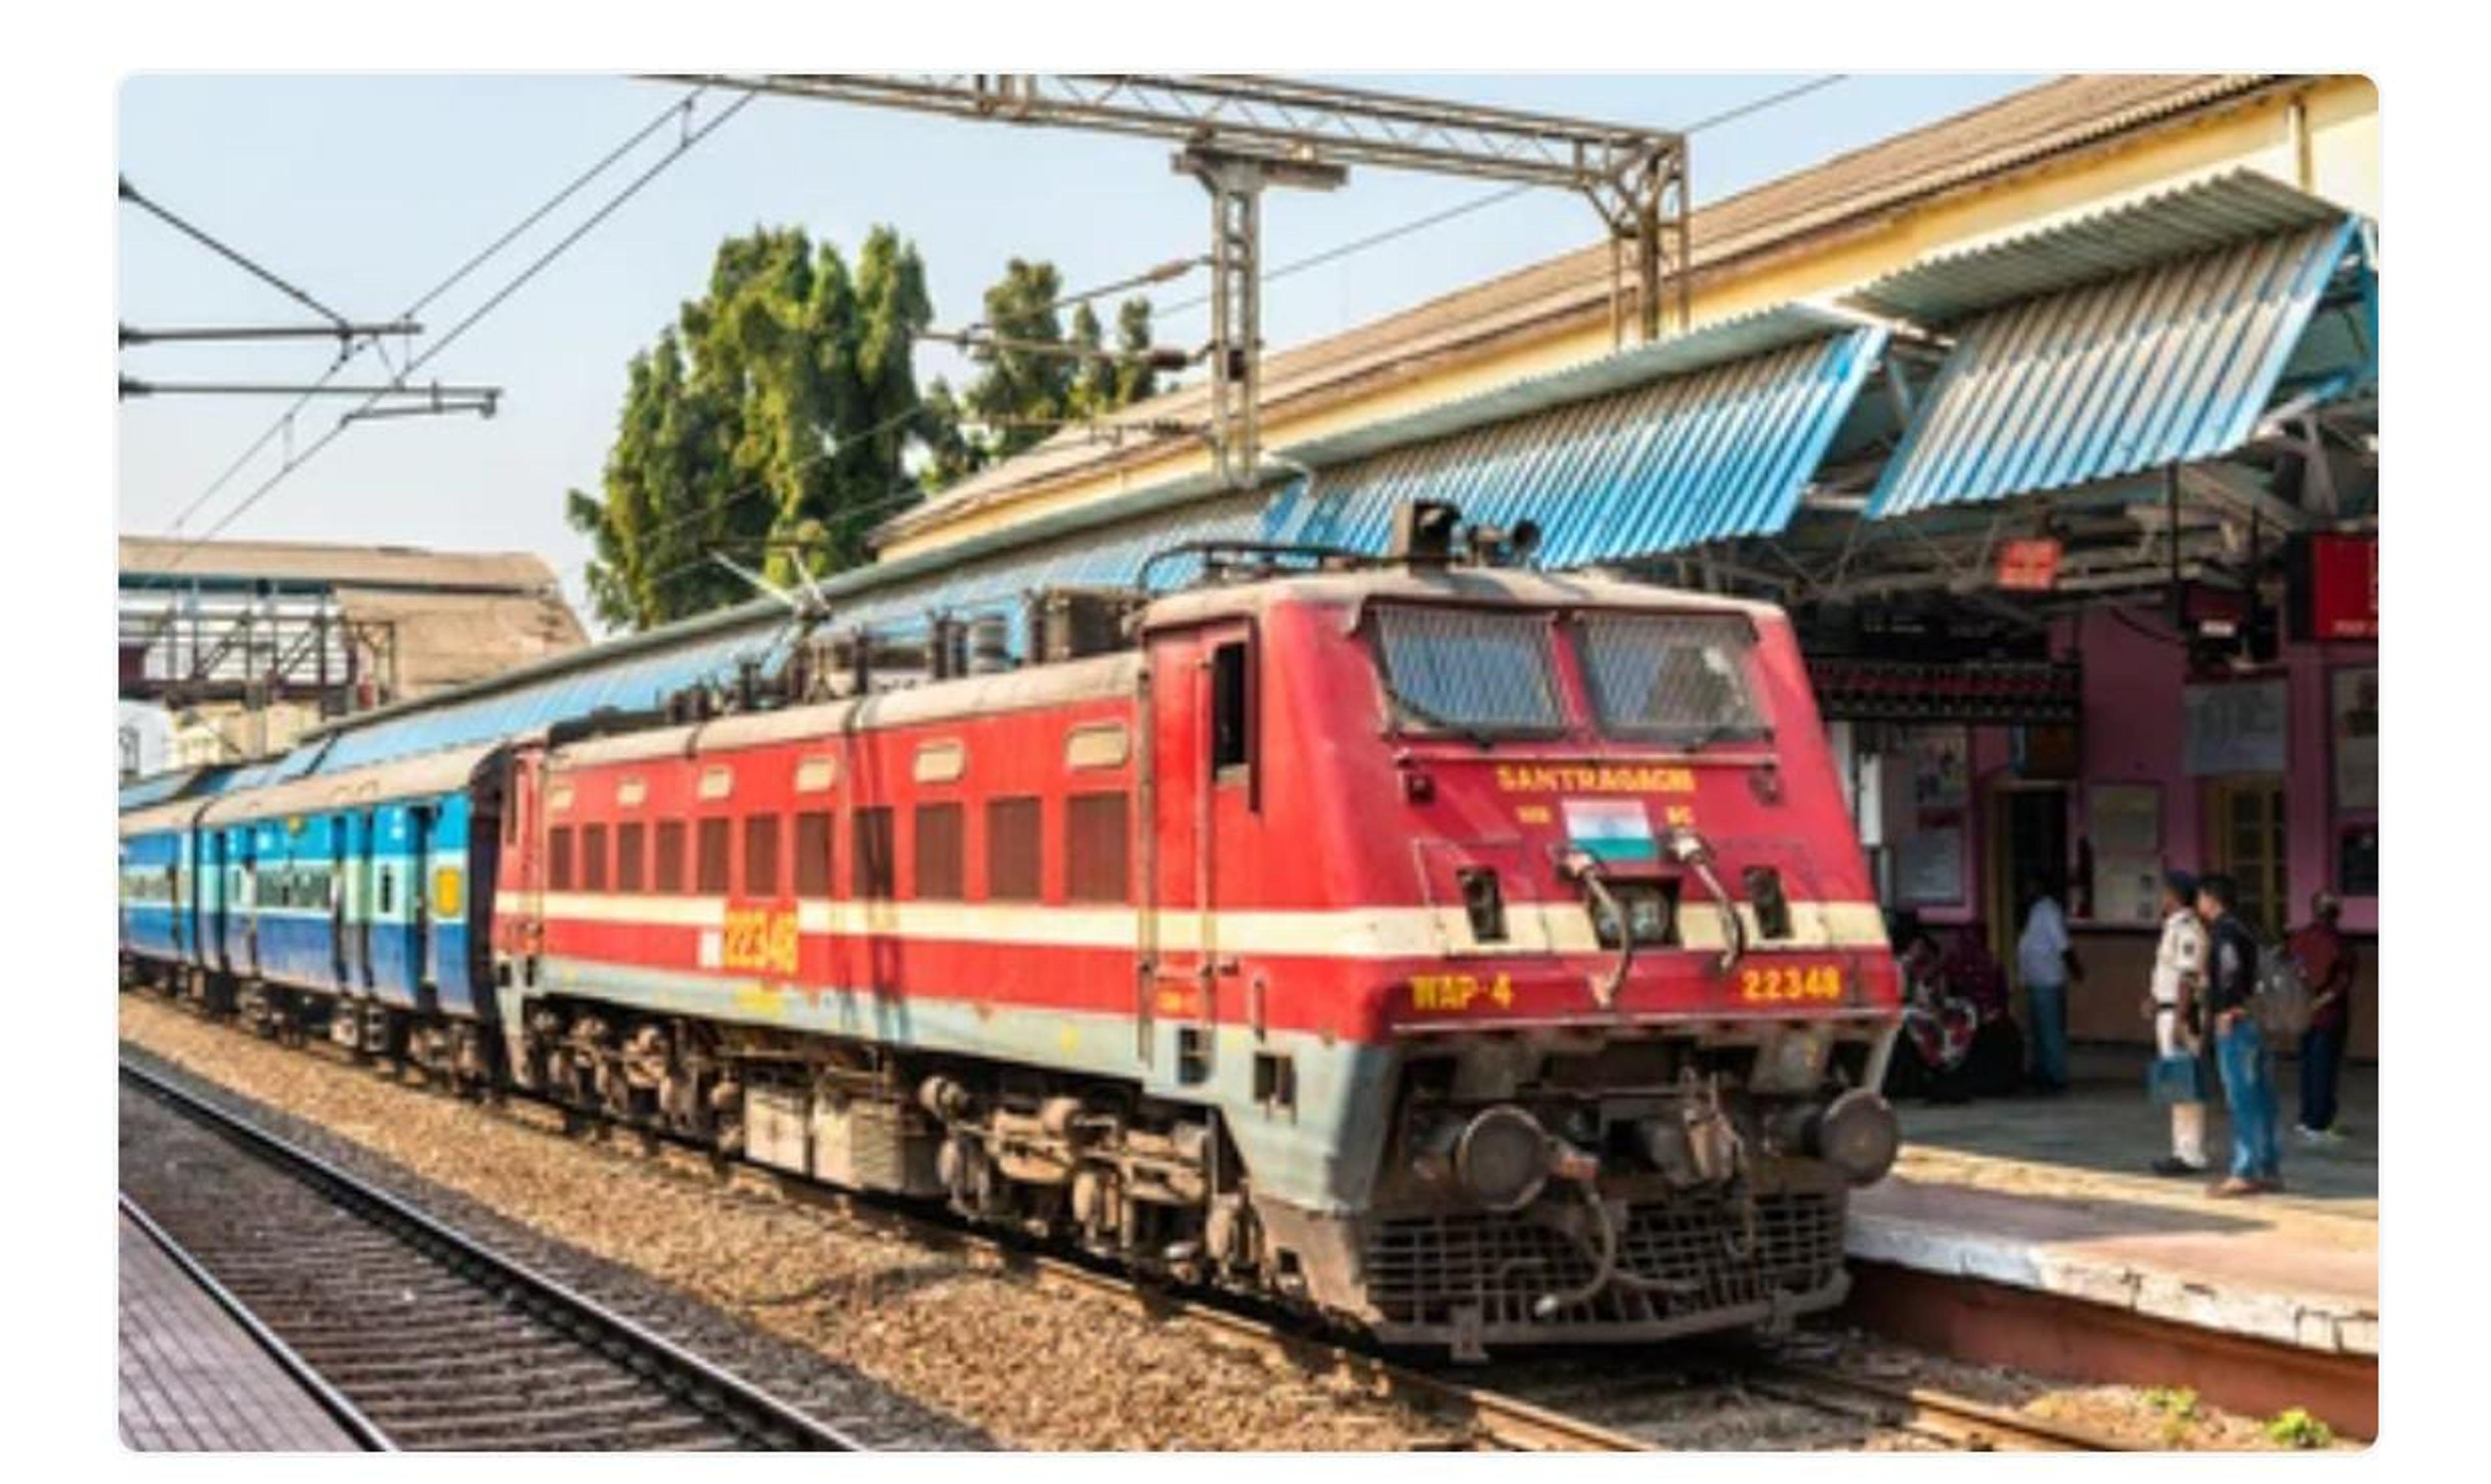 दिल्ली, जम्मू, गुवाहाटी समेत कई प्रमुख स्थानों के लिए चलेंगी समर स्पेशल ट्रेन